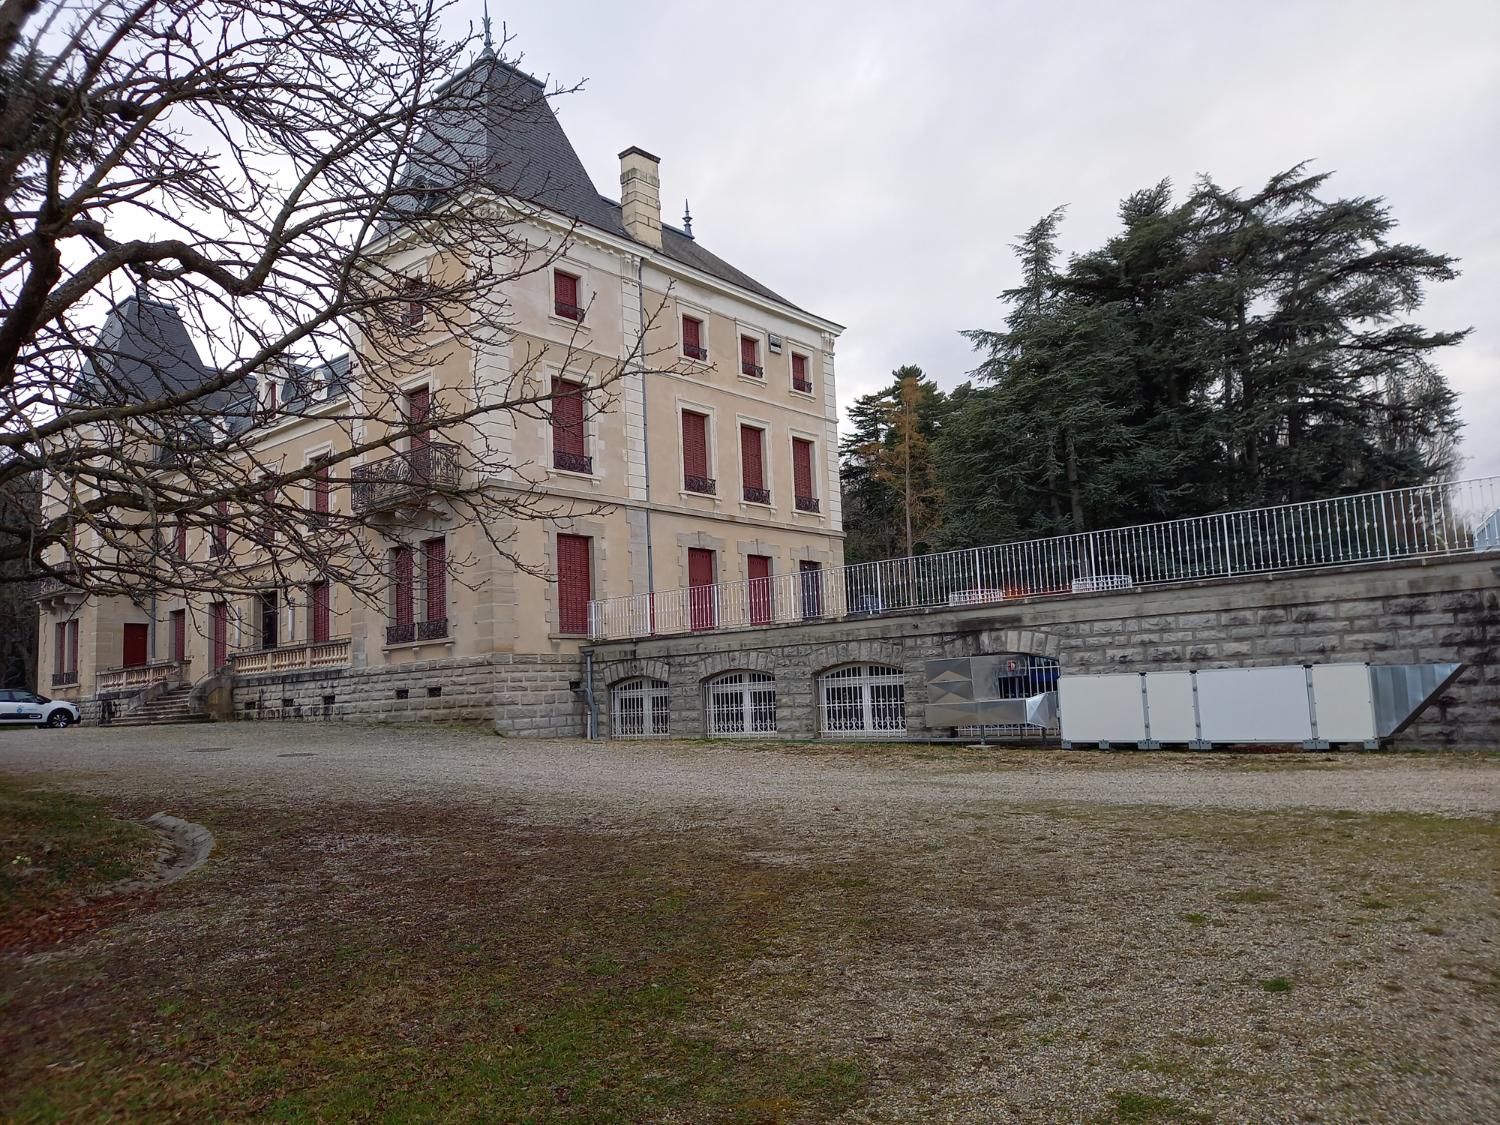 Maison, dite château Prodon, puis restaurant d'application du collège d'enseignement technique, actuellement lycée professionnel hôtelier